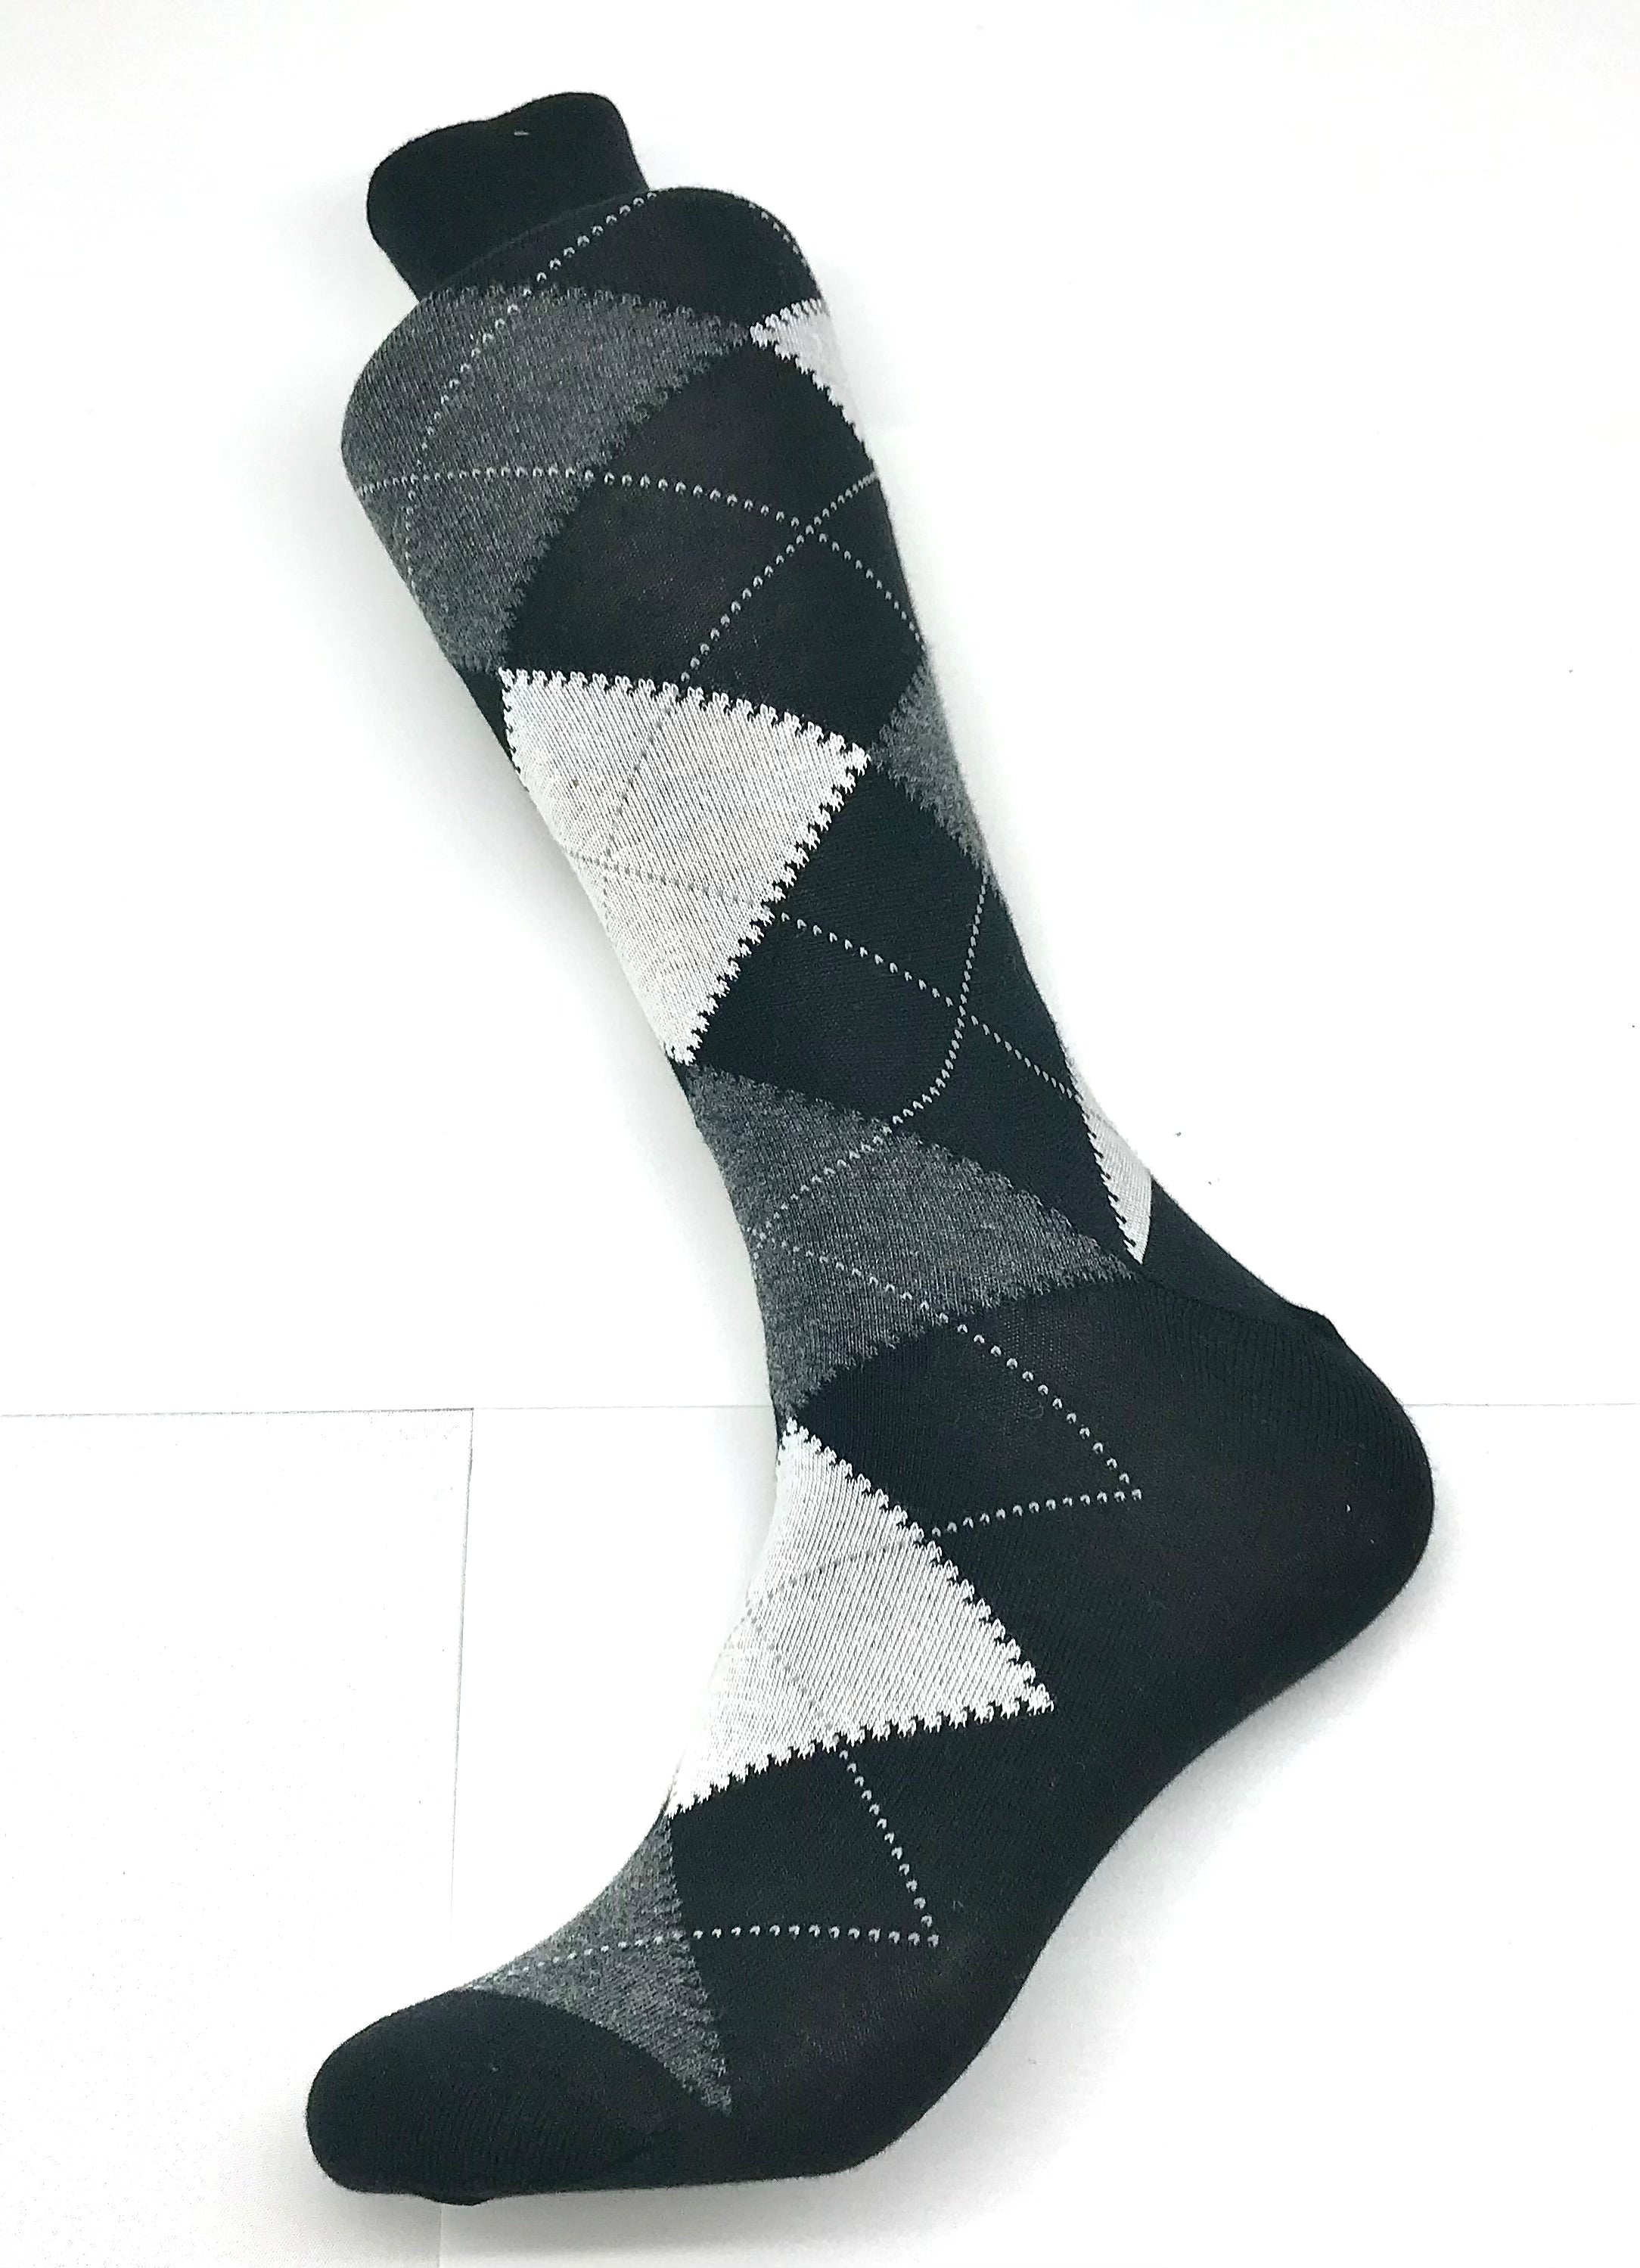 Black & White Argyle Sock